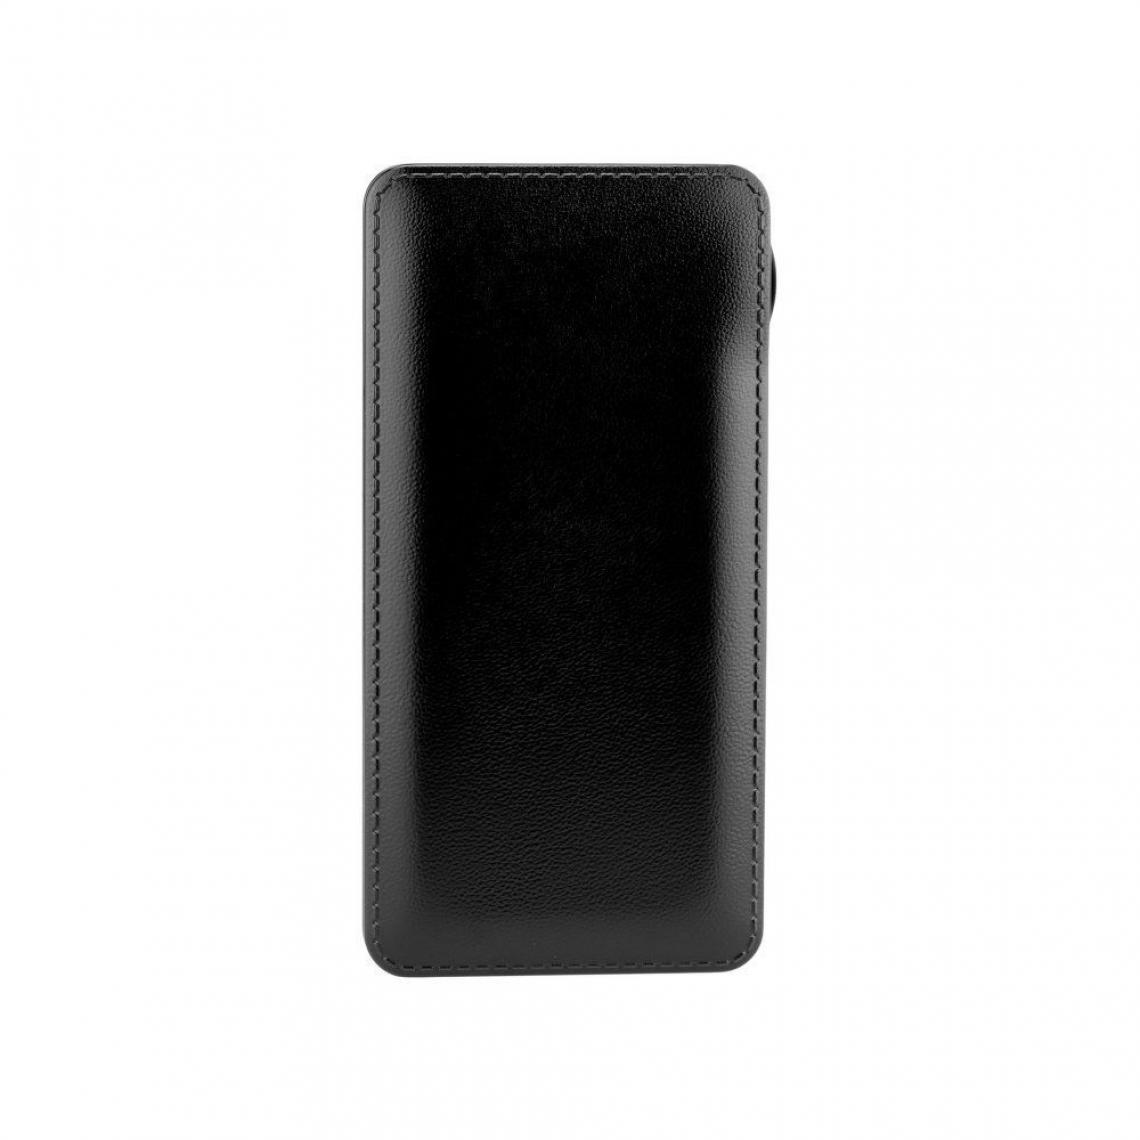 Ozzzo - Chargeur batterie externe 30000 mAh powerbank ozzzo noir pour HTC U ultra - Autres accessoires smartphone